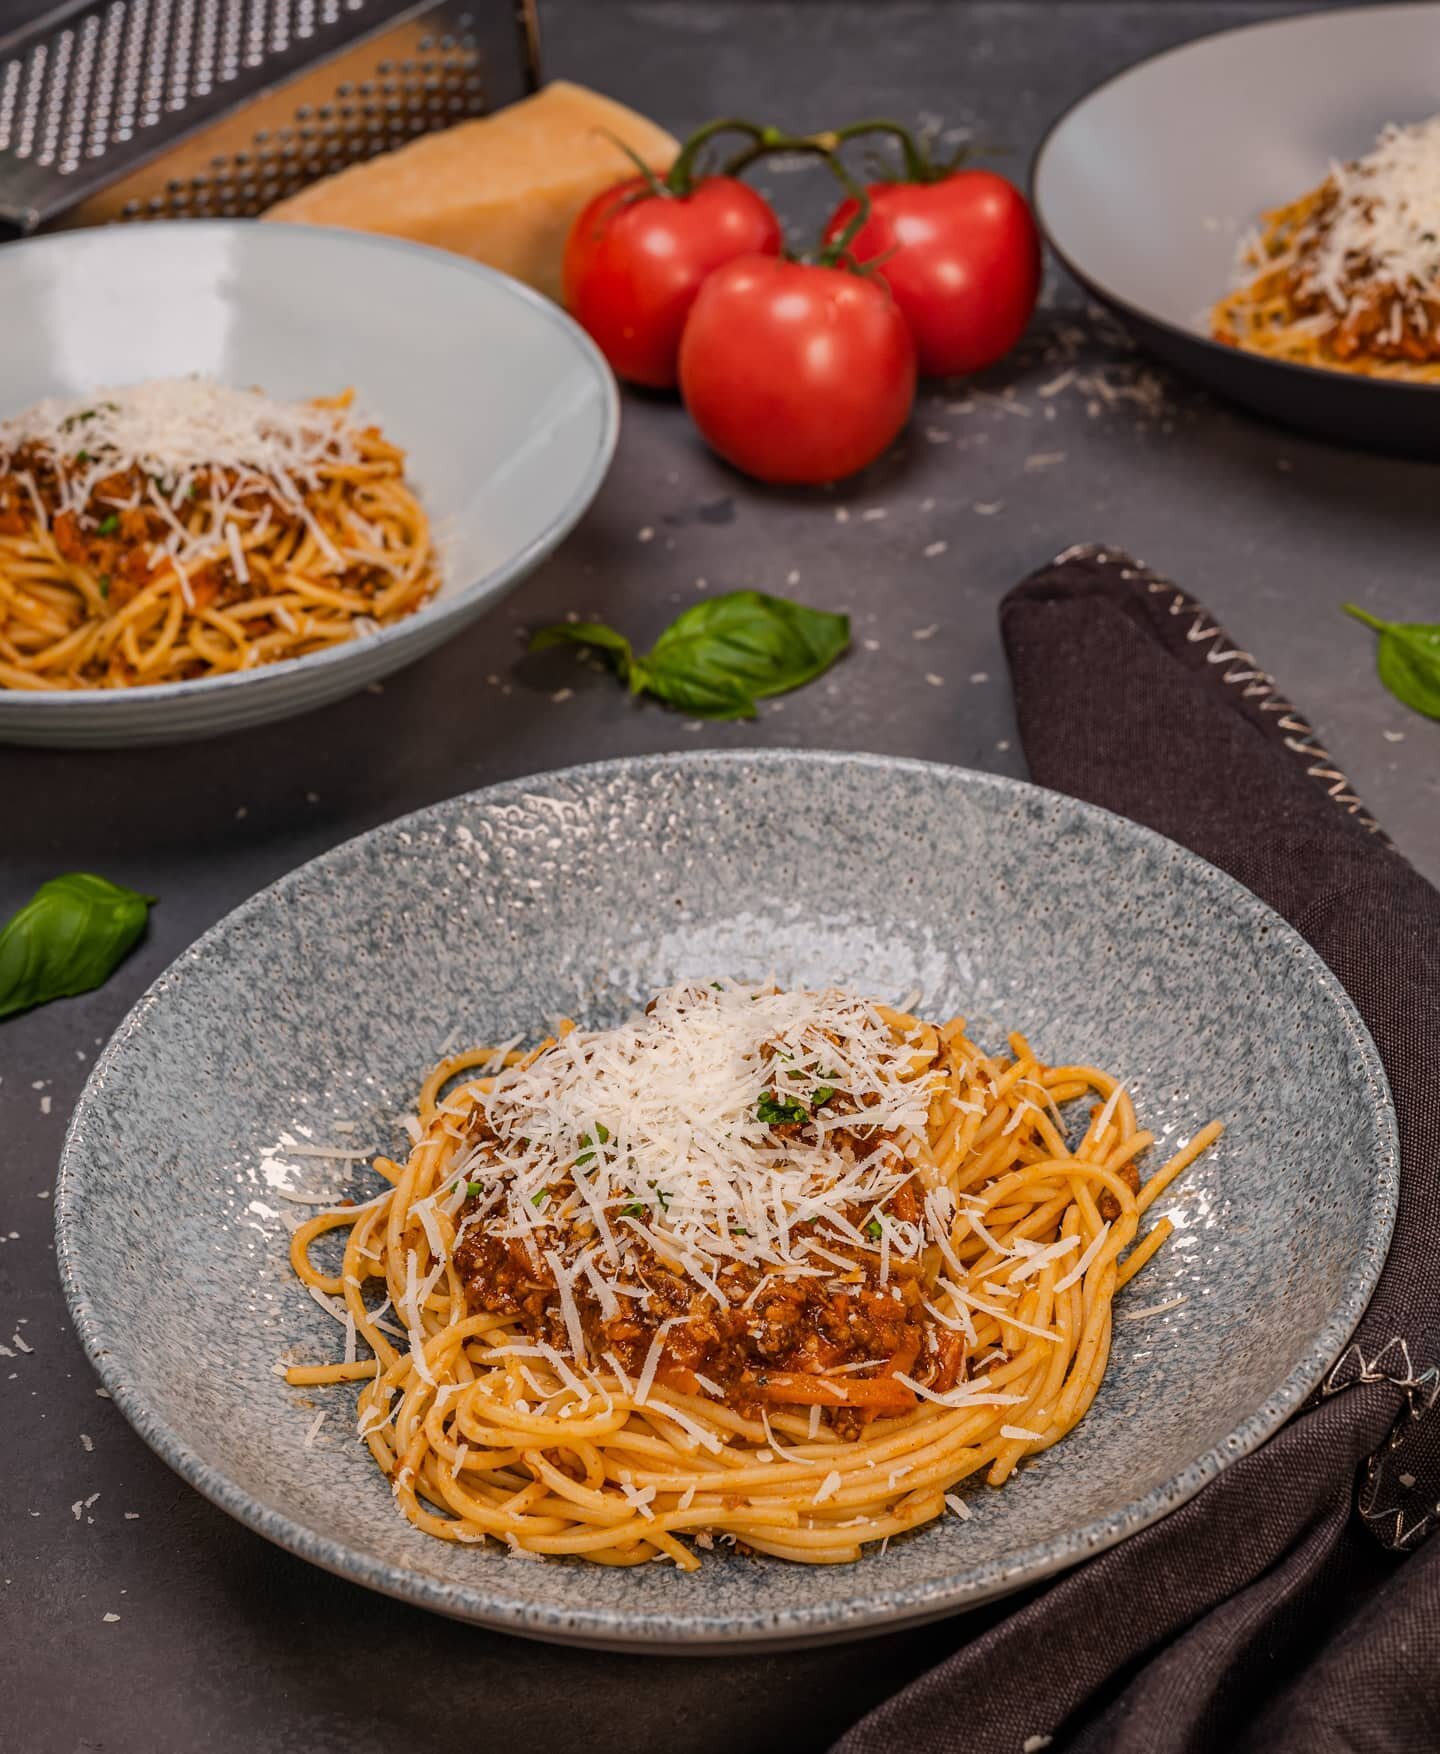 Less upsetti - more spaghetti.🍝